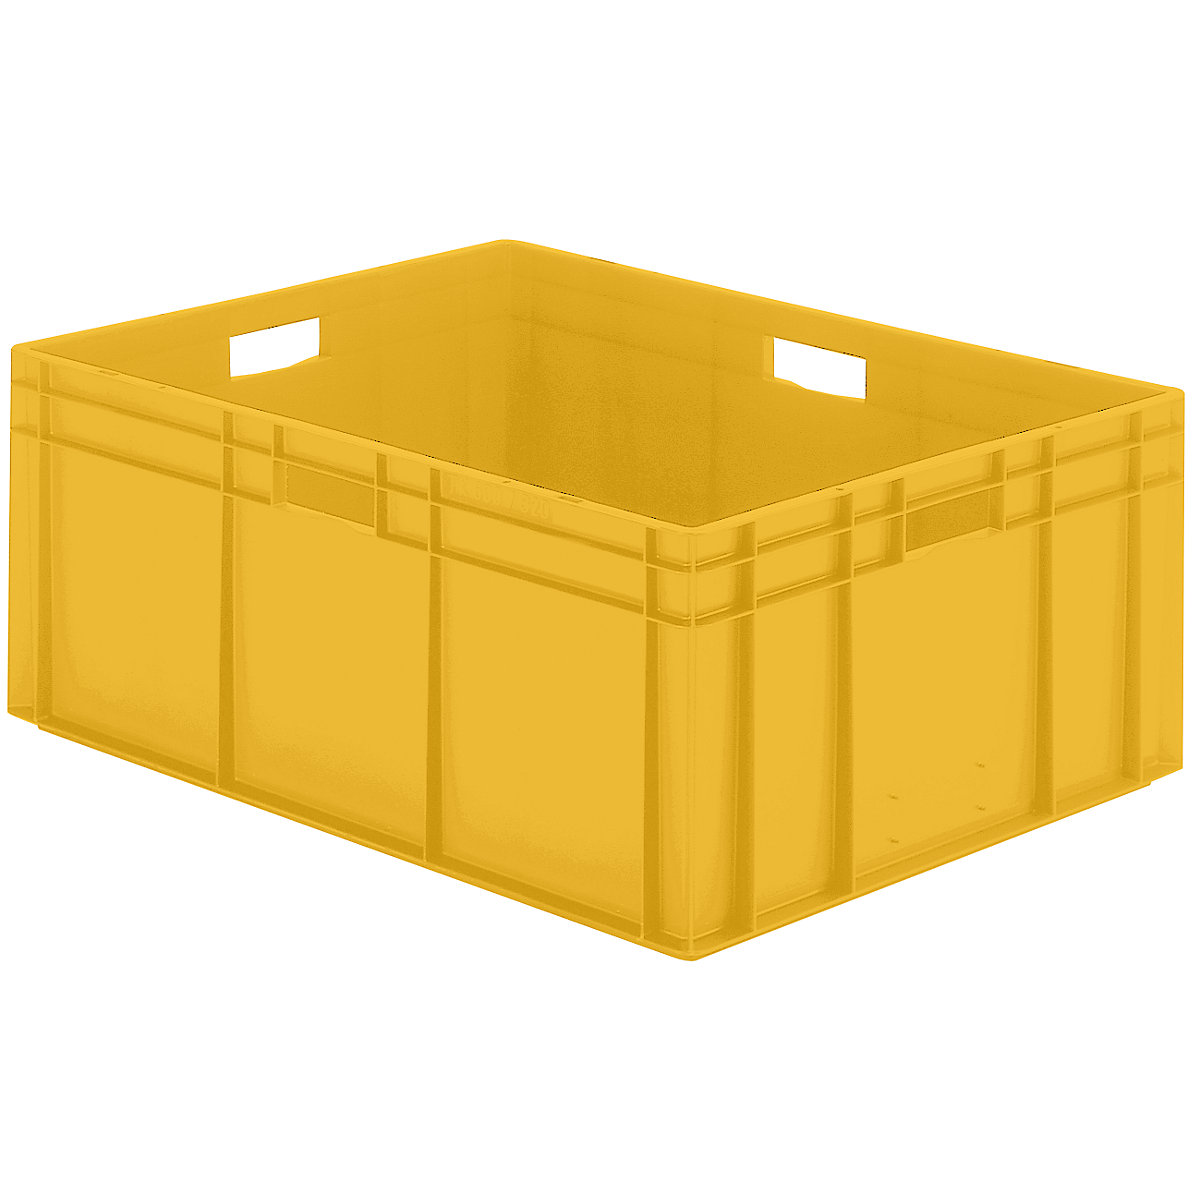 Euro-Format-Stapelbehälter, Wände und Boden geschlossen, LxBxH 800 x 600 x 320 mm, gelb, VE 2 Stk